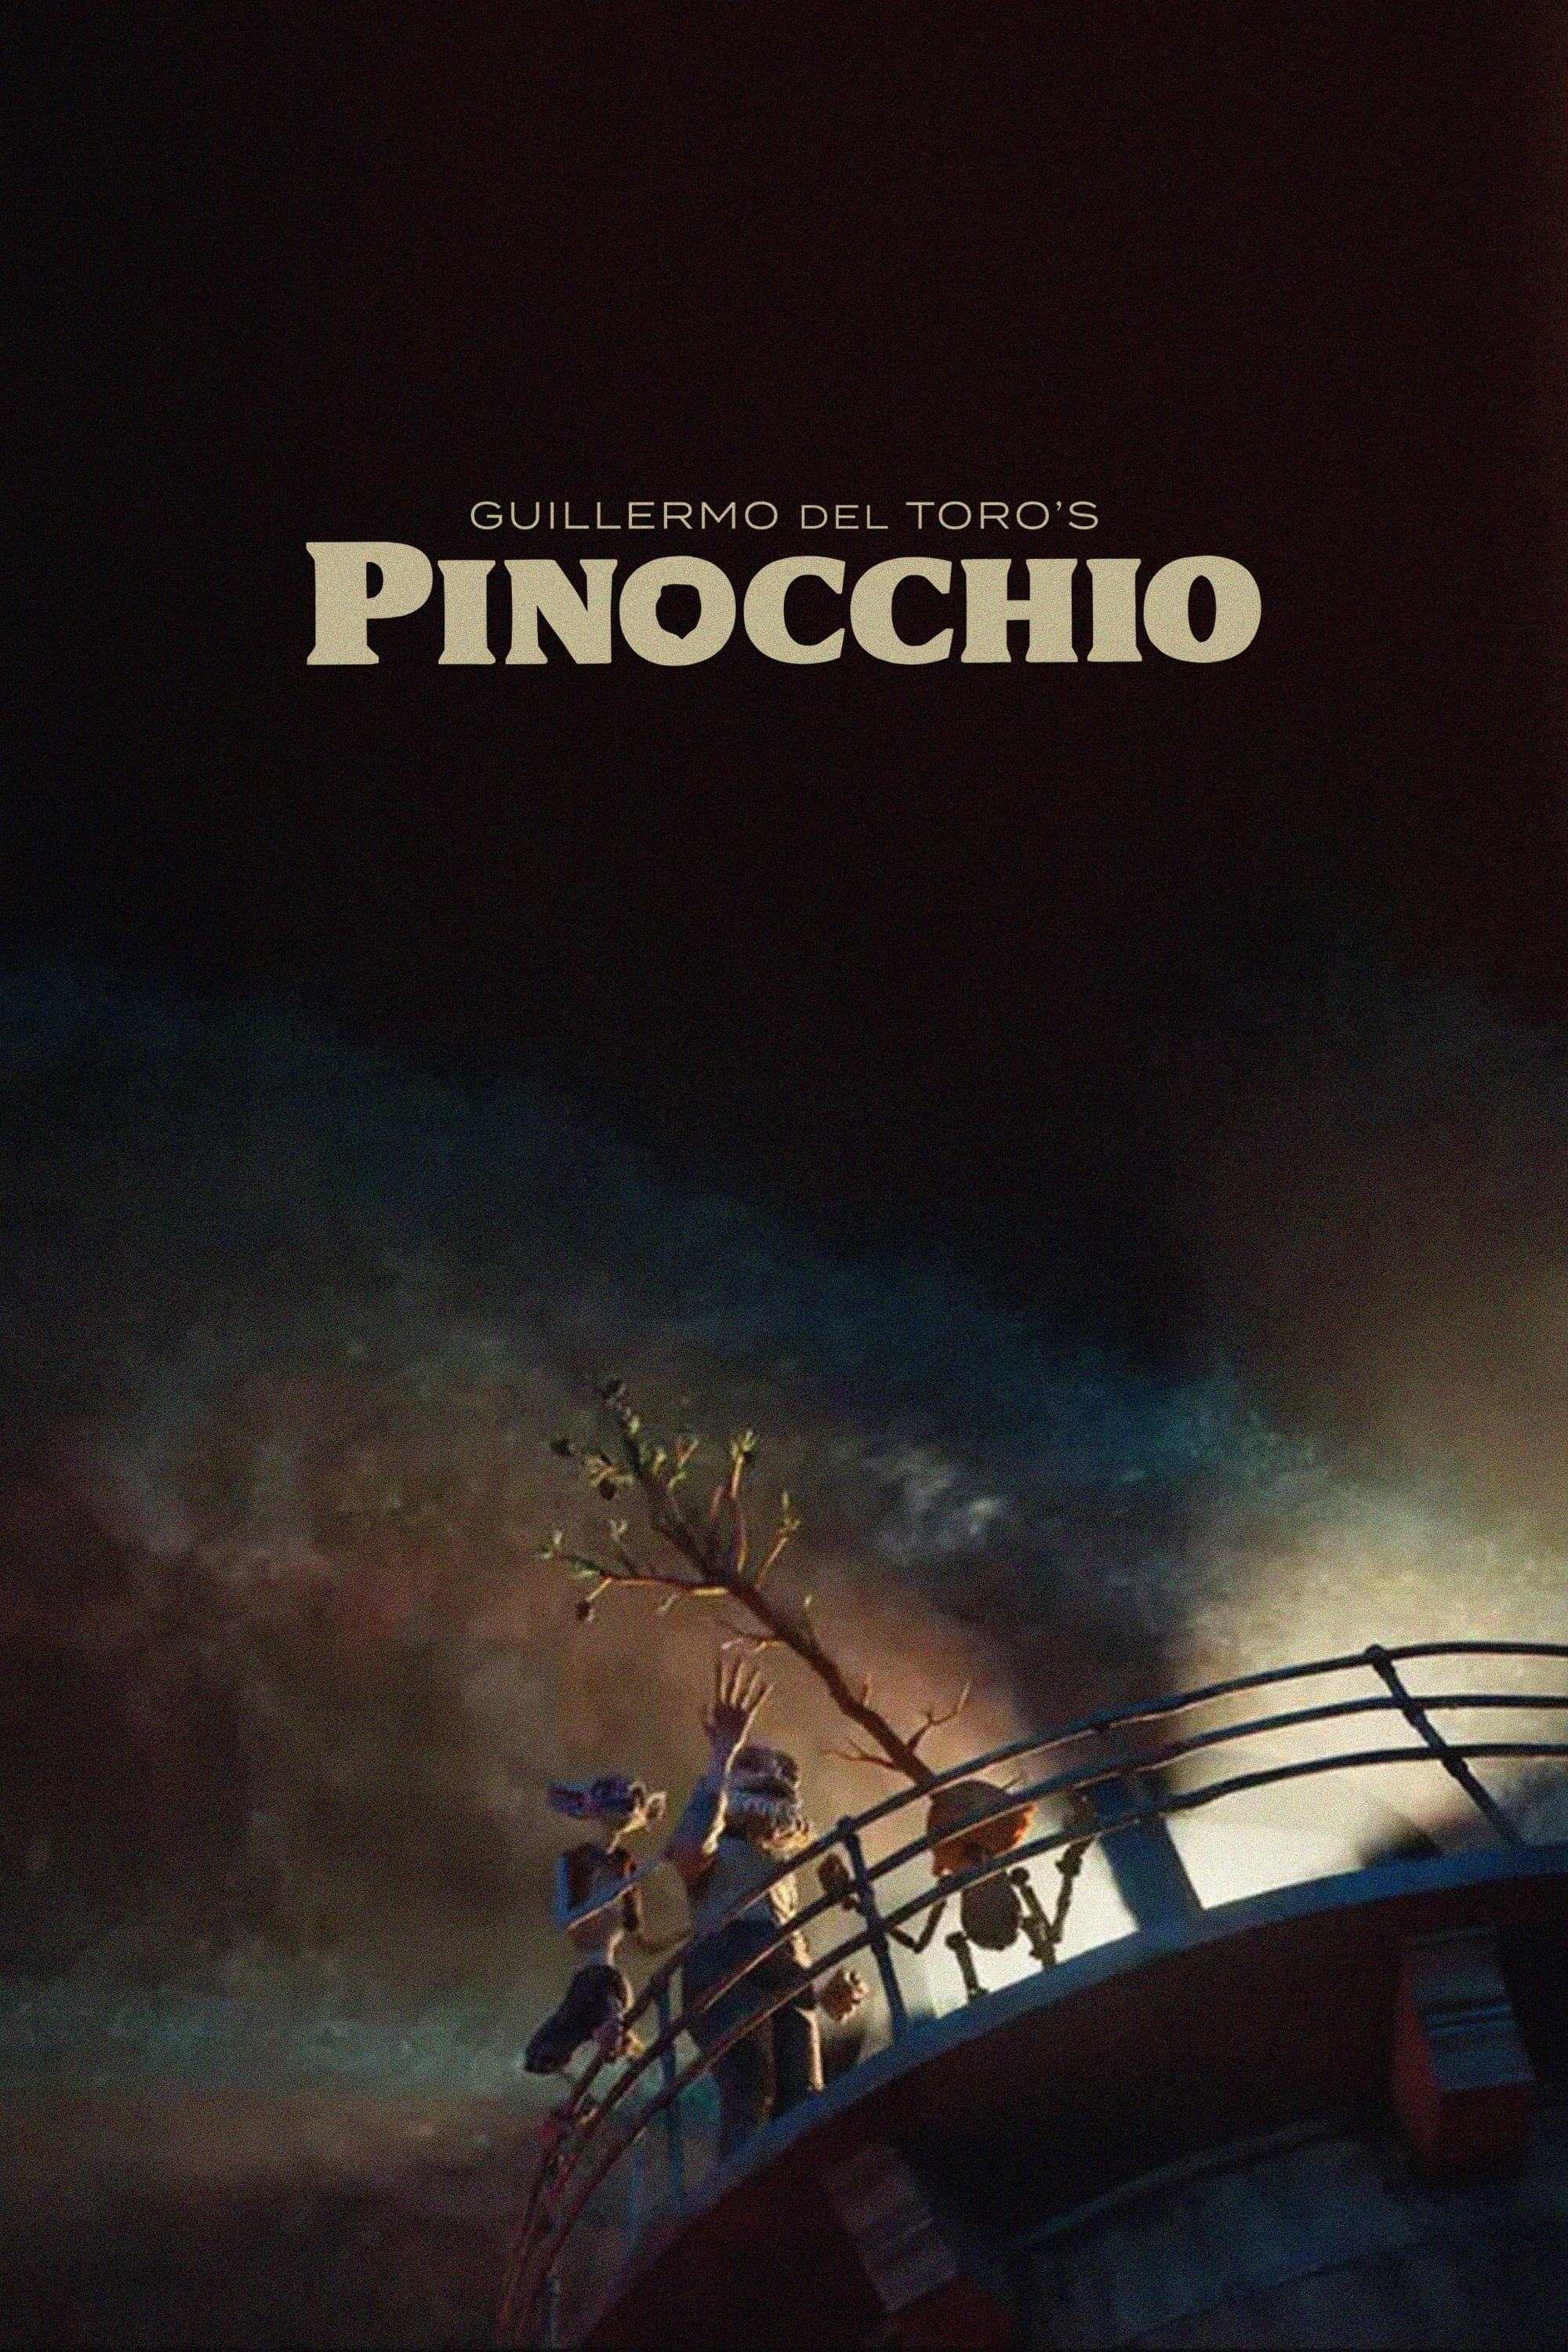 Guillermo del Toro's Pinocchio Movie poster